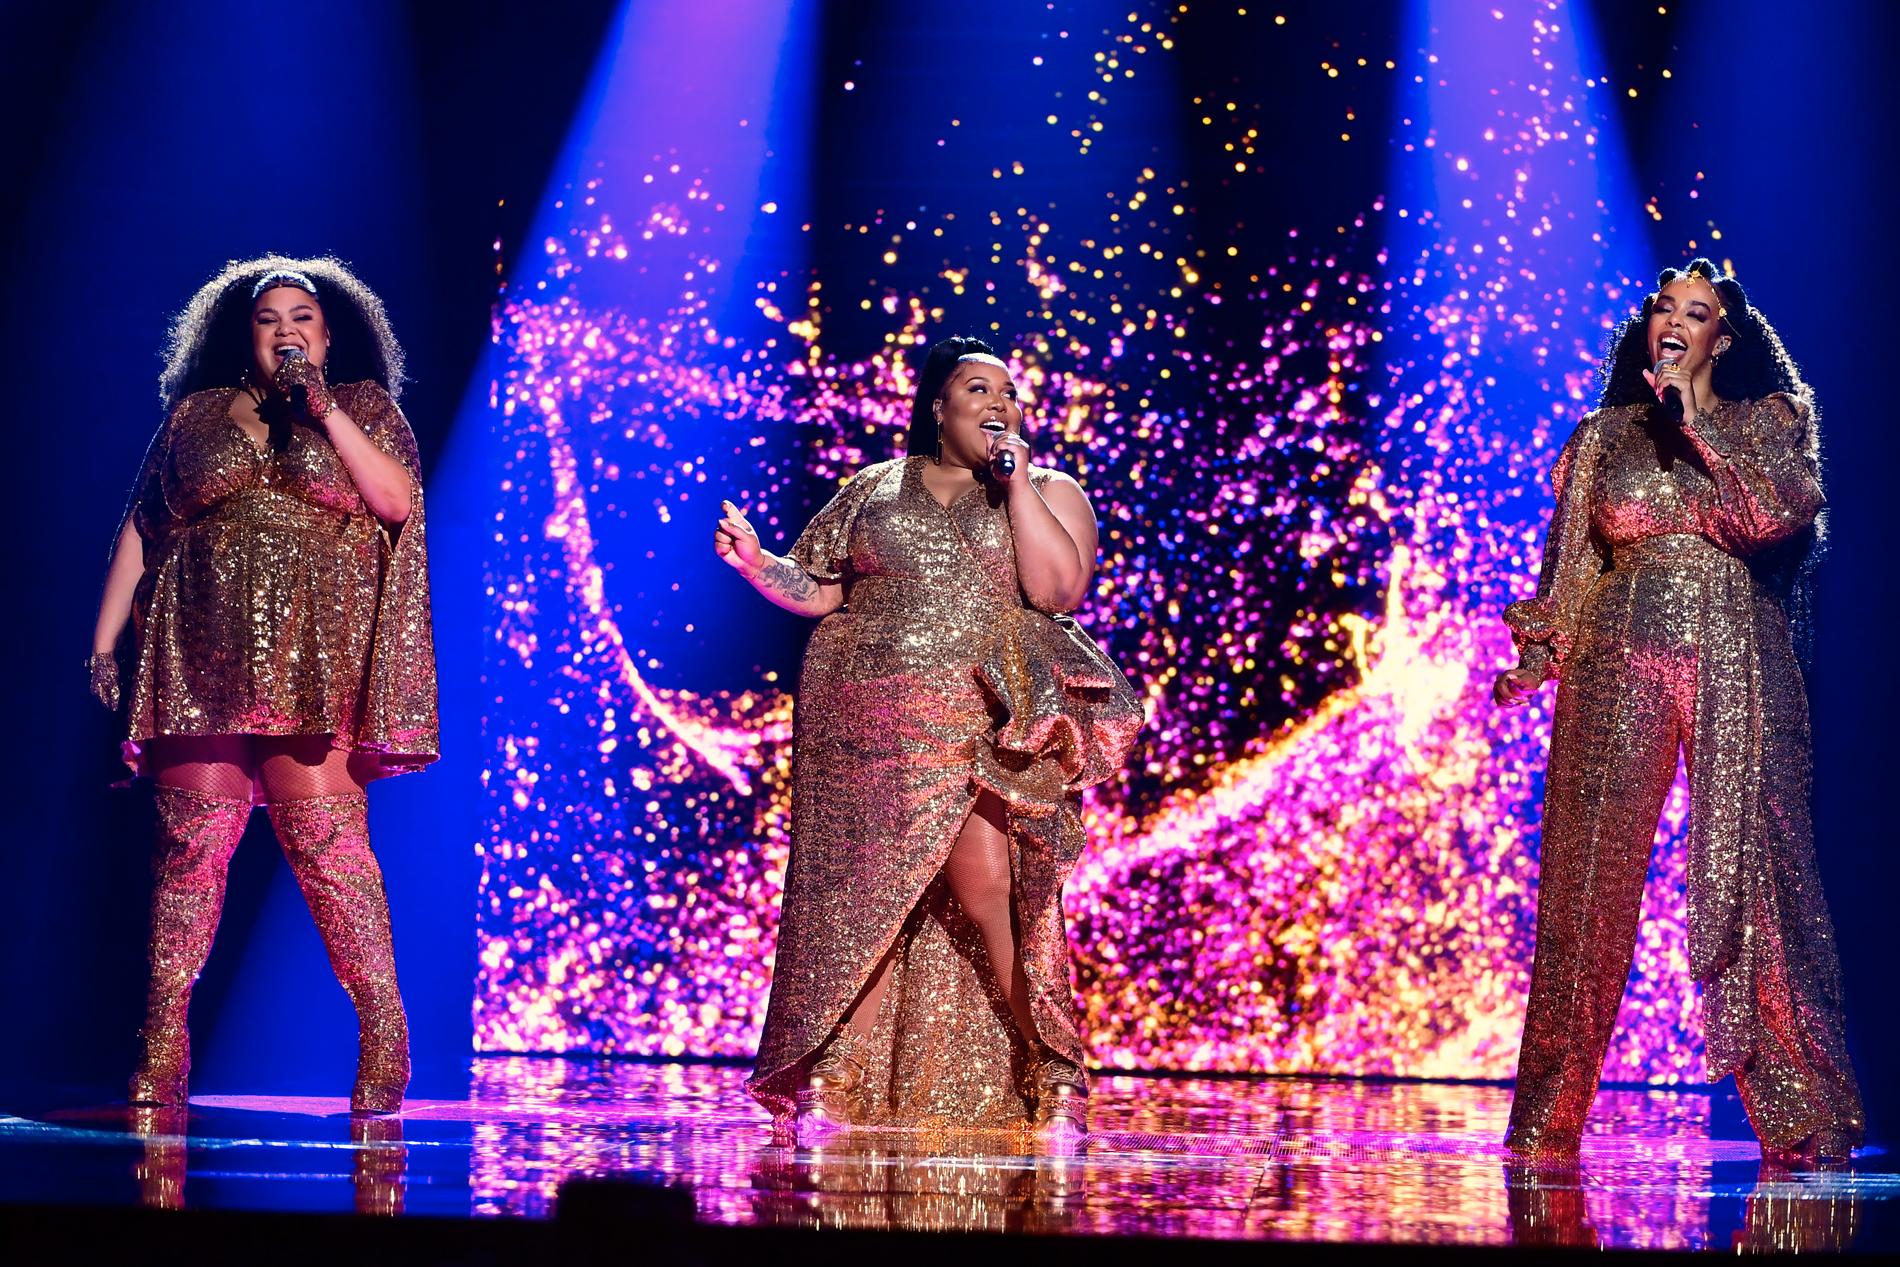 The Mamas väljer guld i Melodifestivalen 2021.